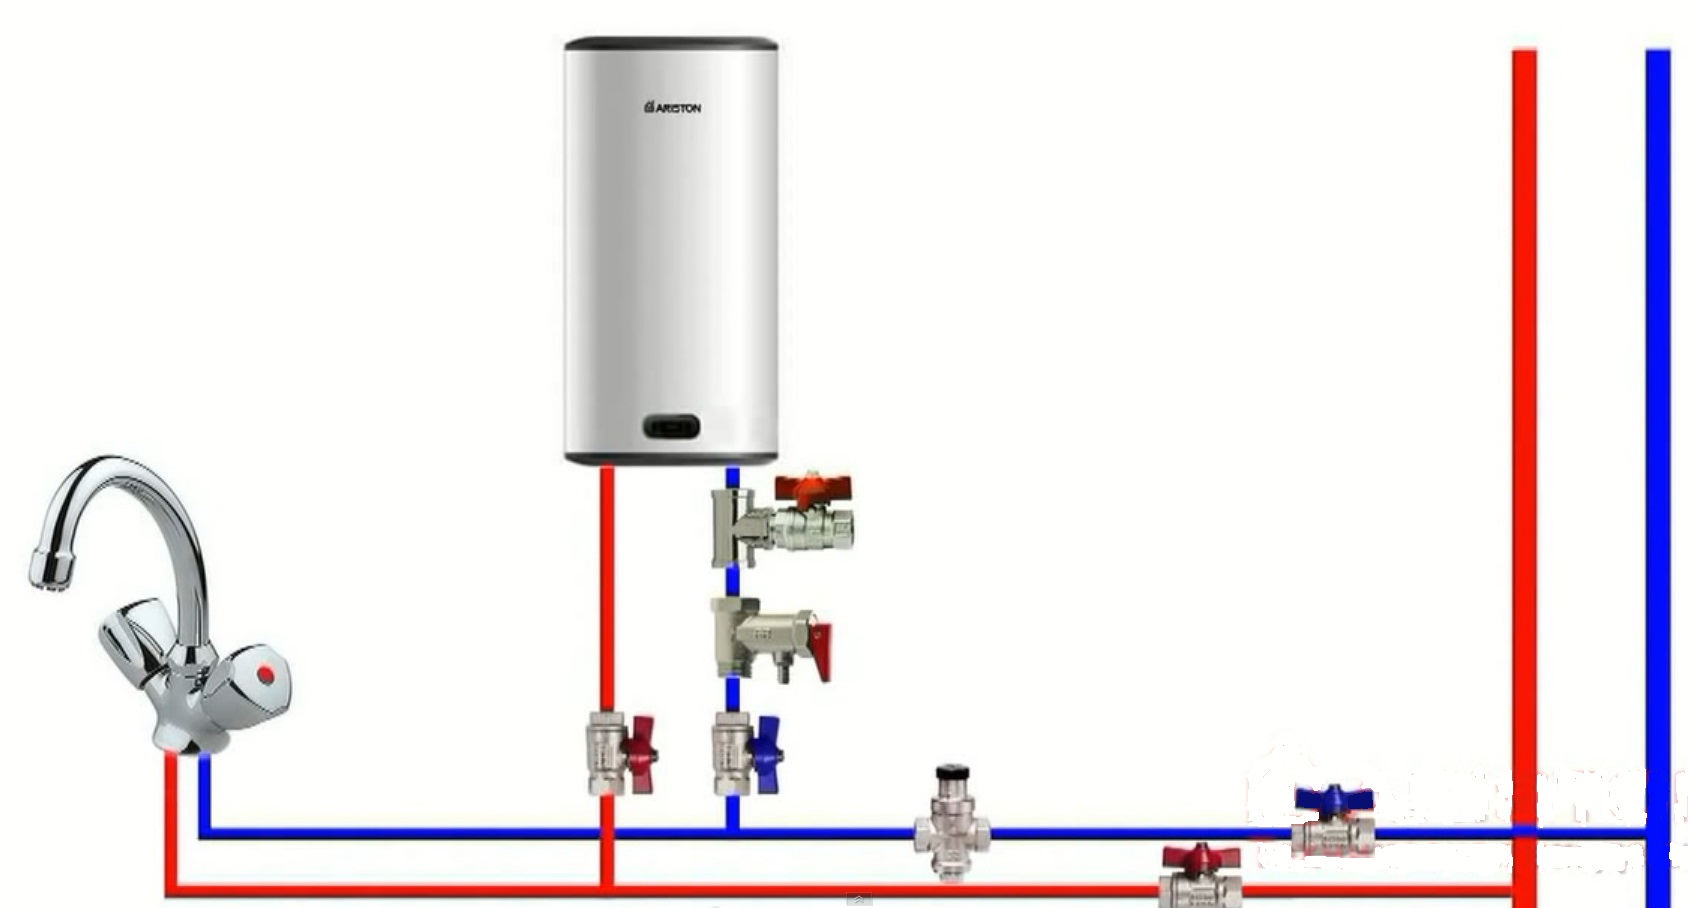 Схема установки водонагревателя